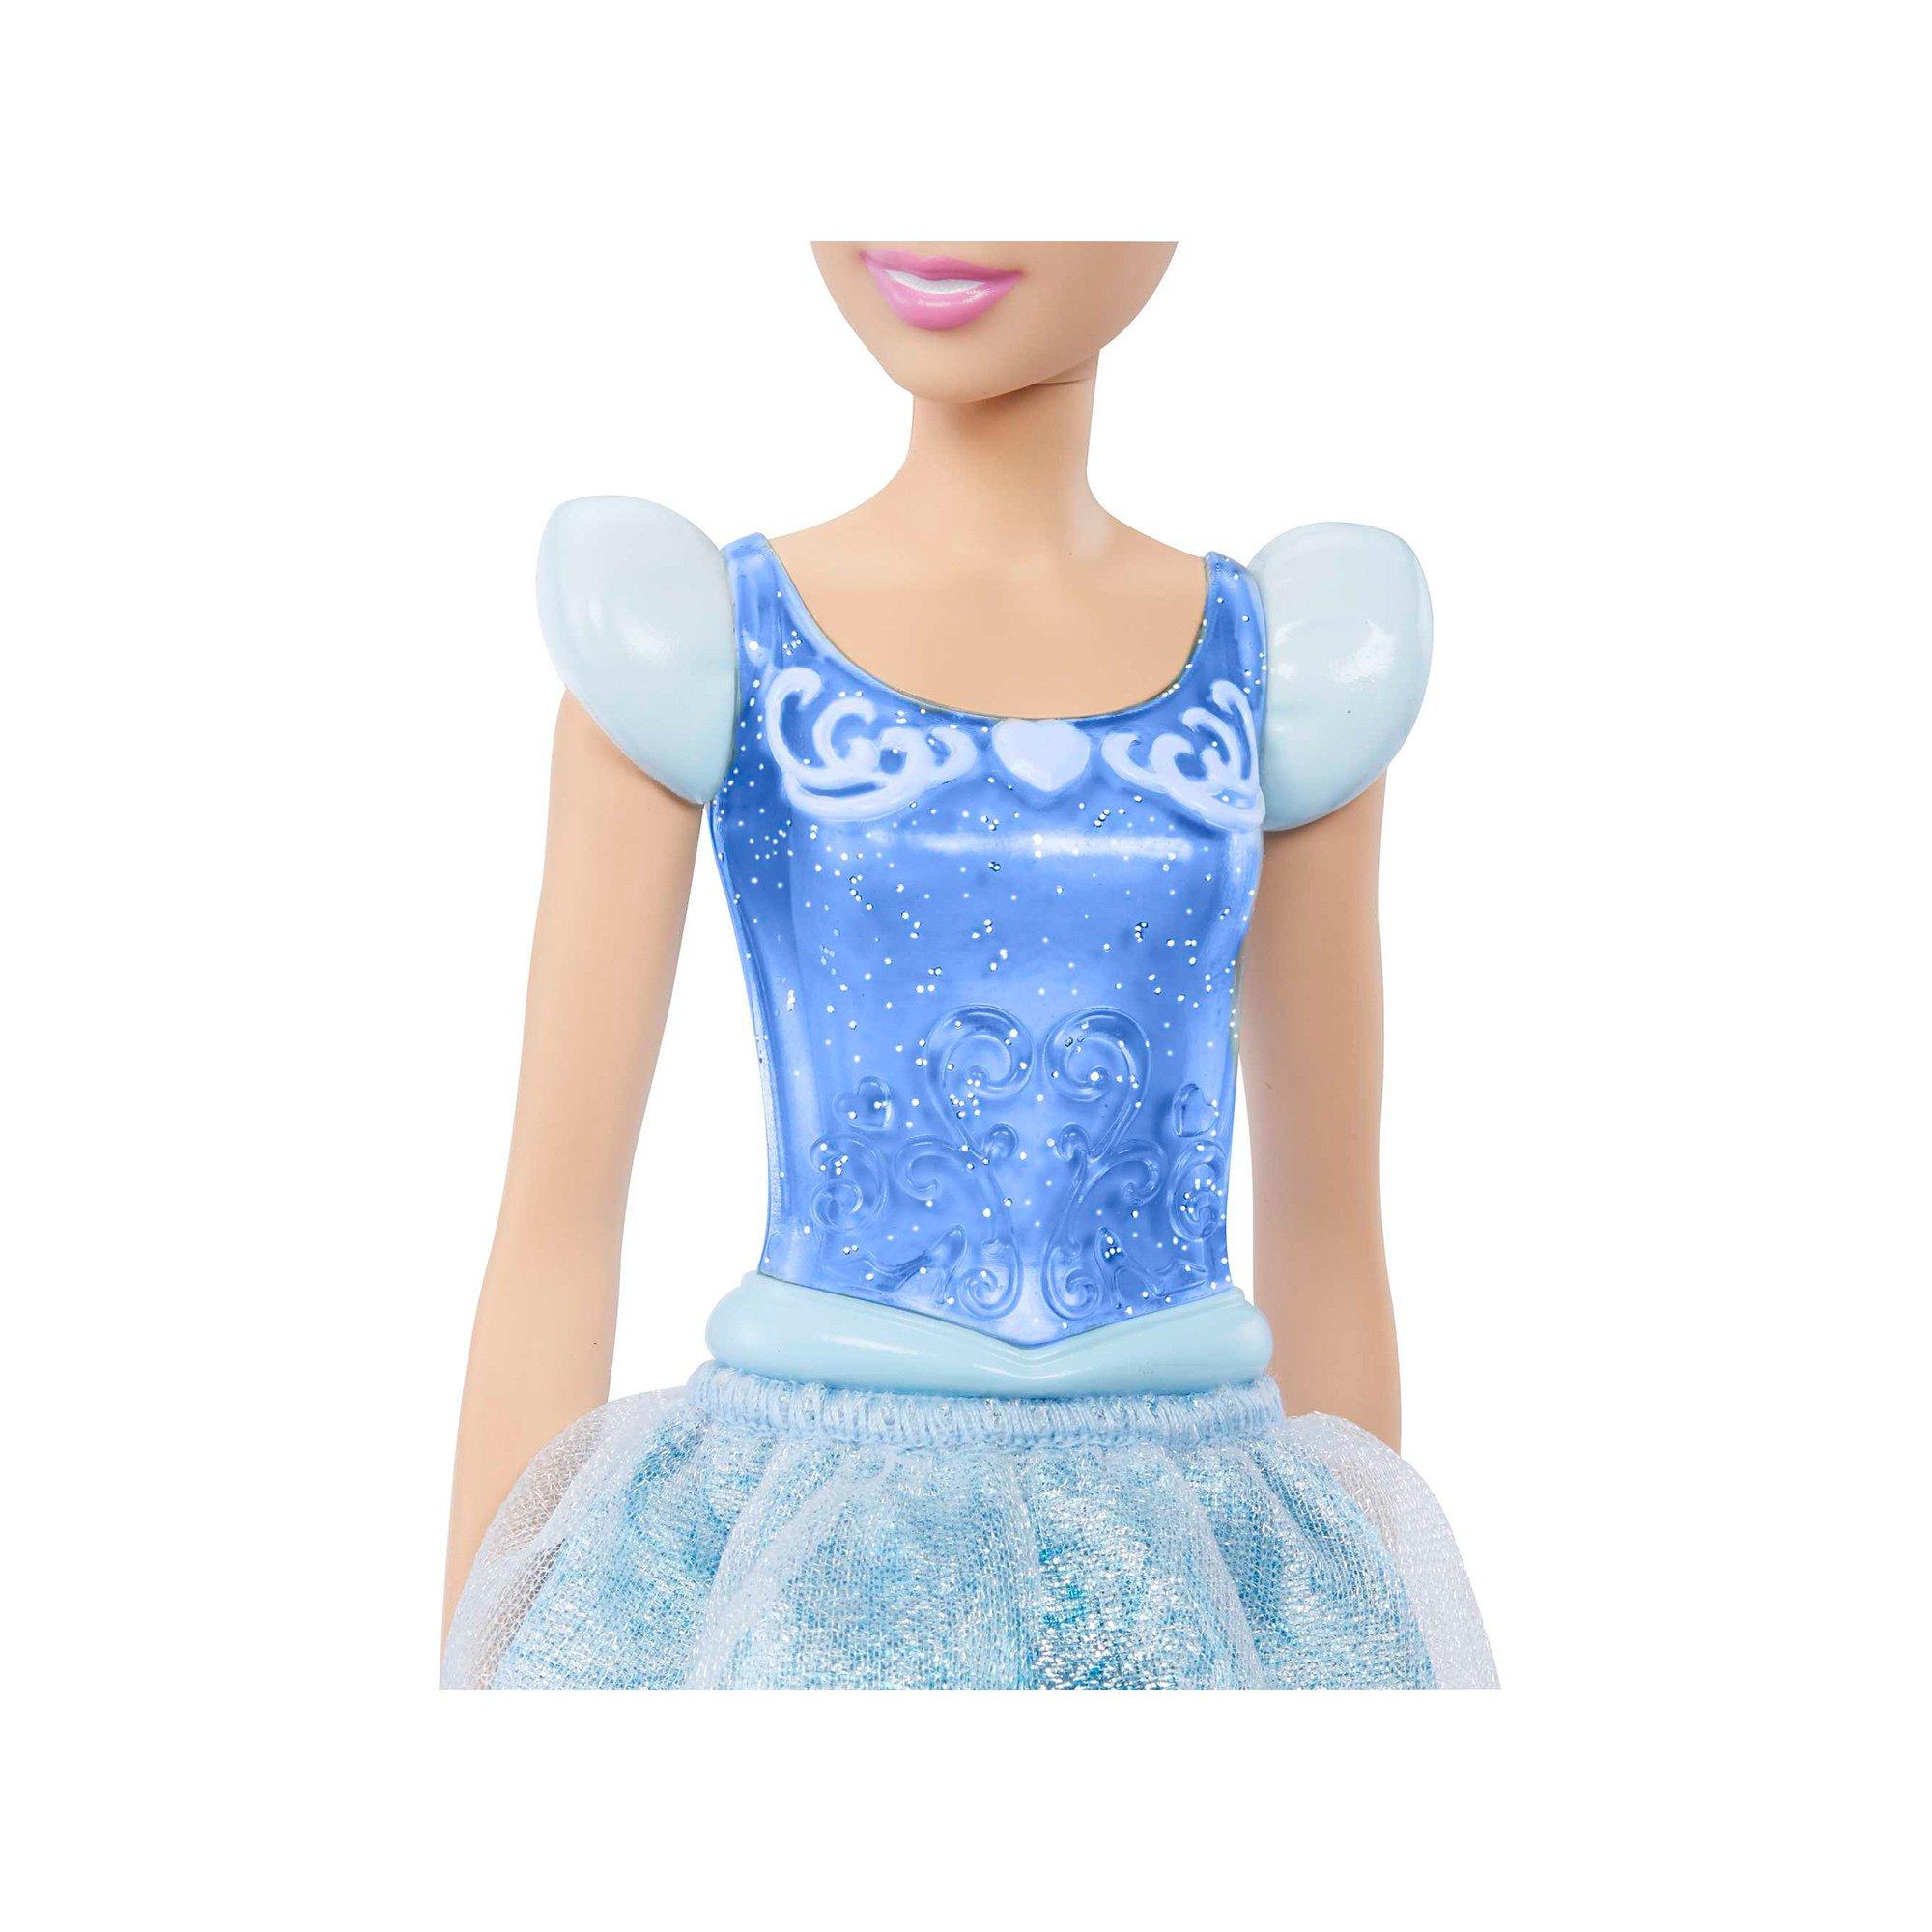 Mattel  Disney Prinzessin Cinderella Puppe 